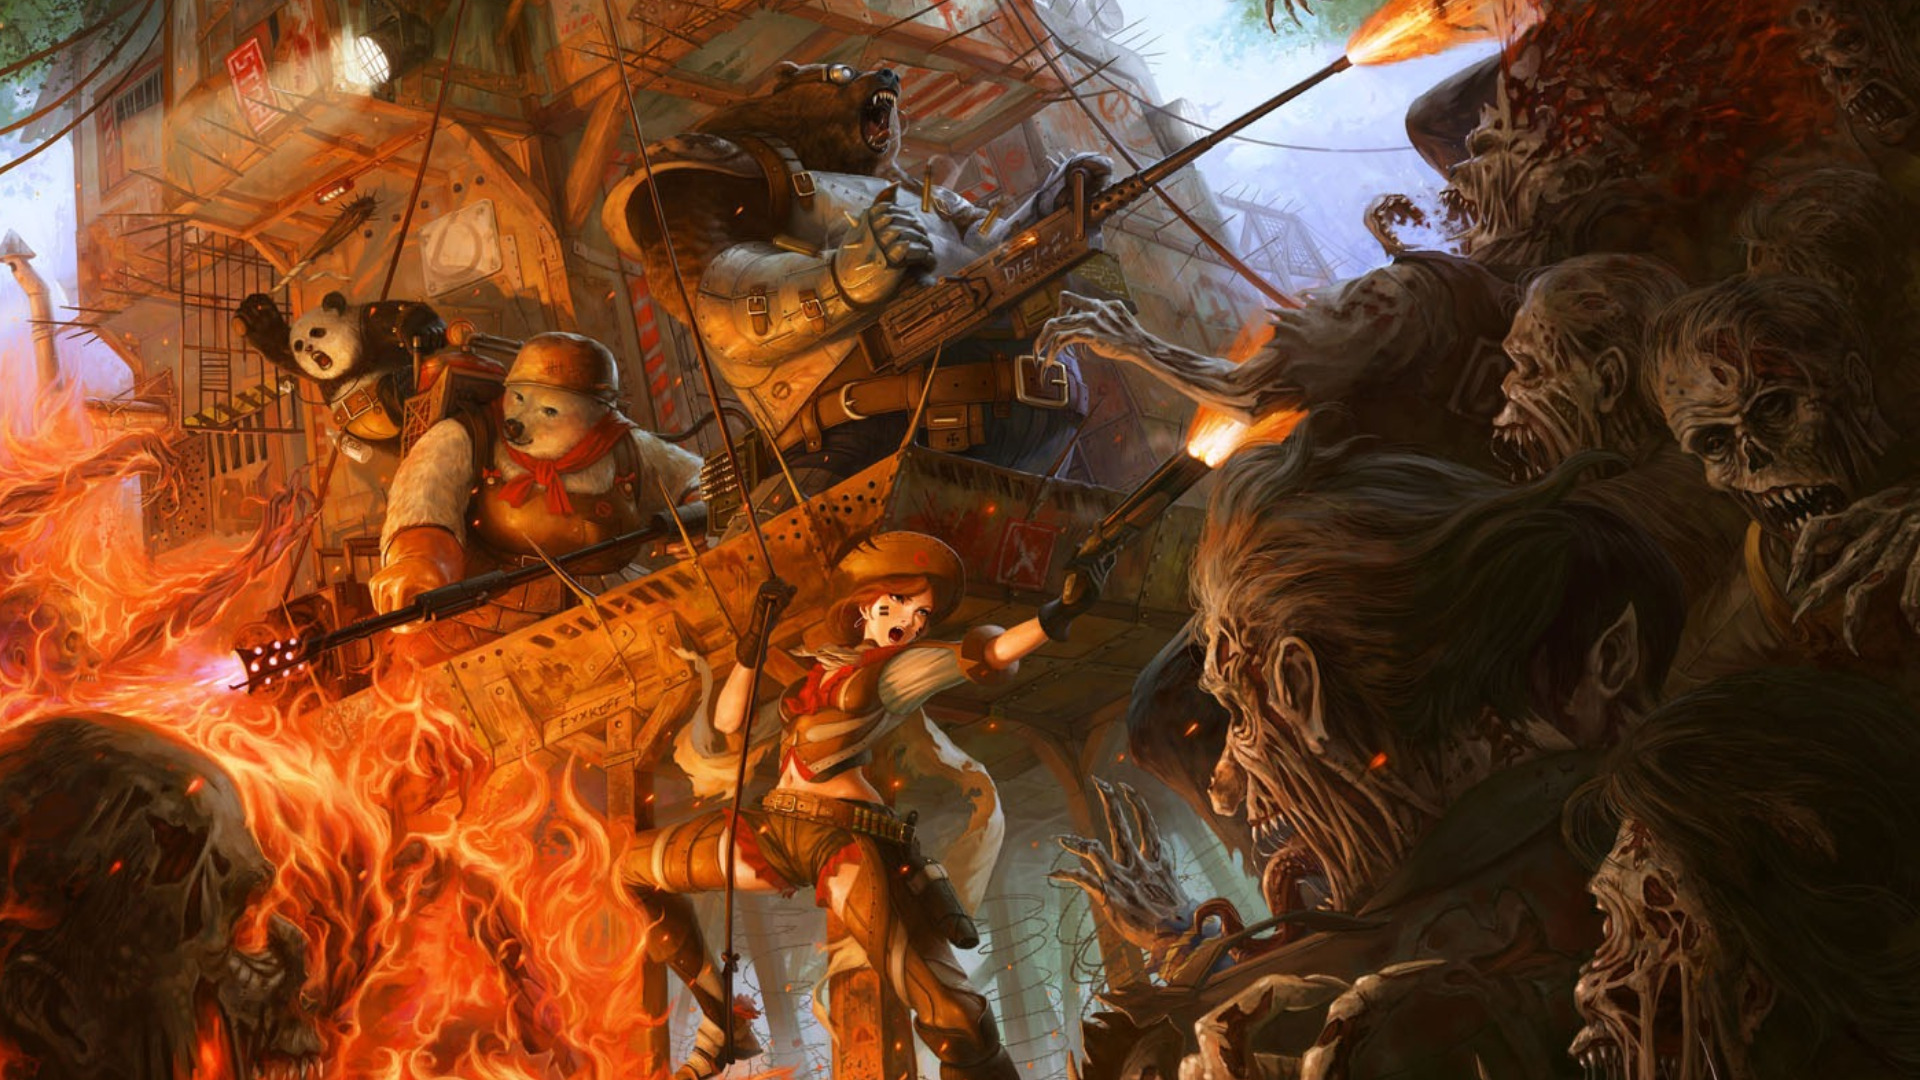 fondo de pantalla de batalla,juego de acción y aventura,cg artwork,juego de pc,demonio,mitología